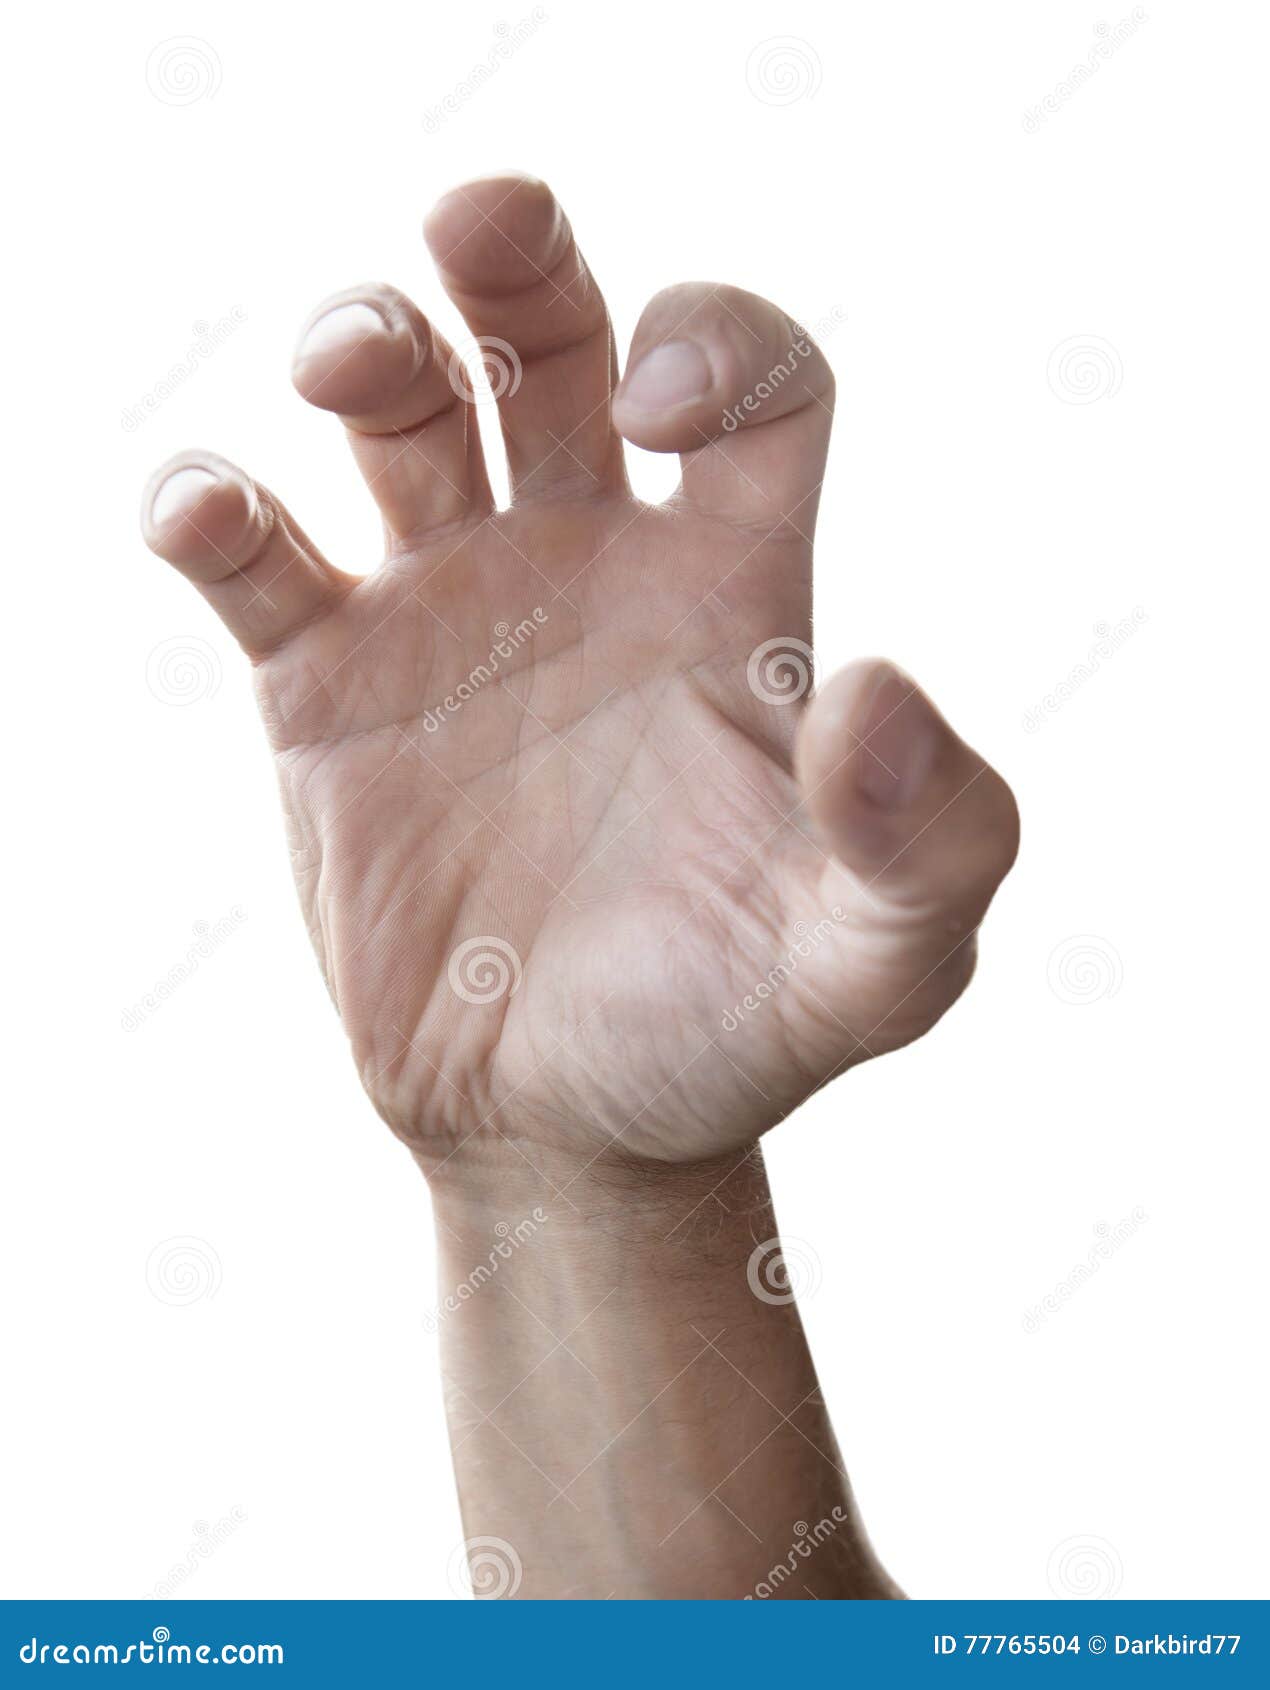 man hand reach out 